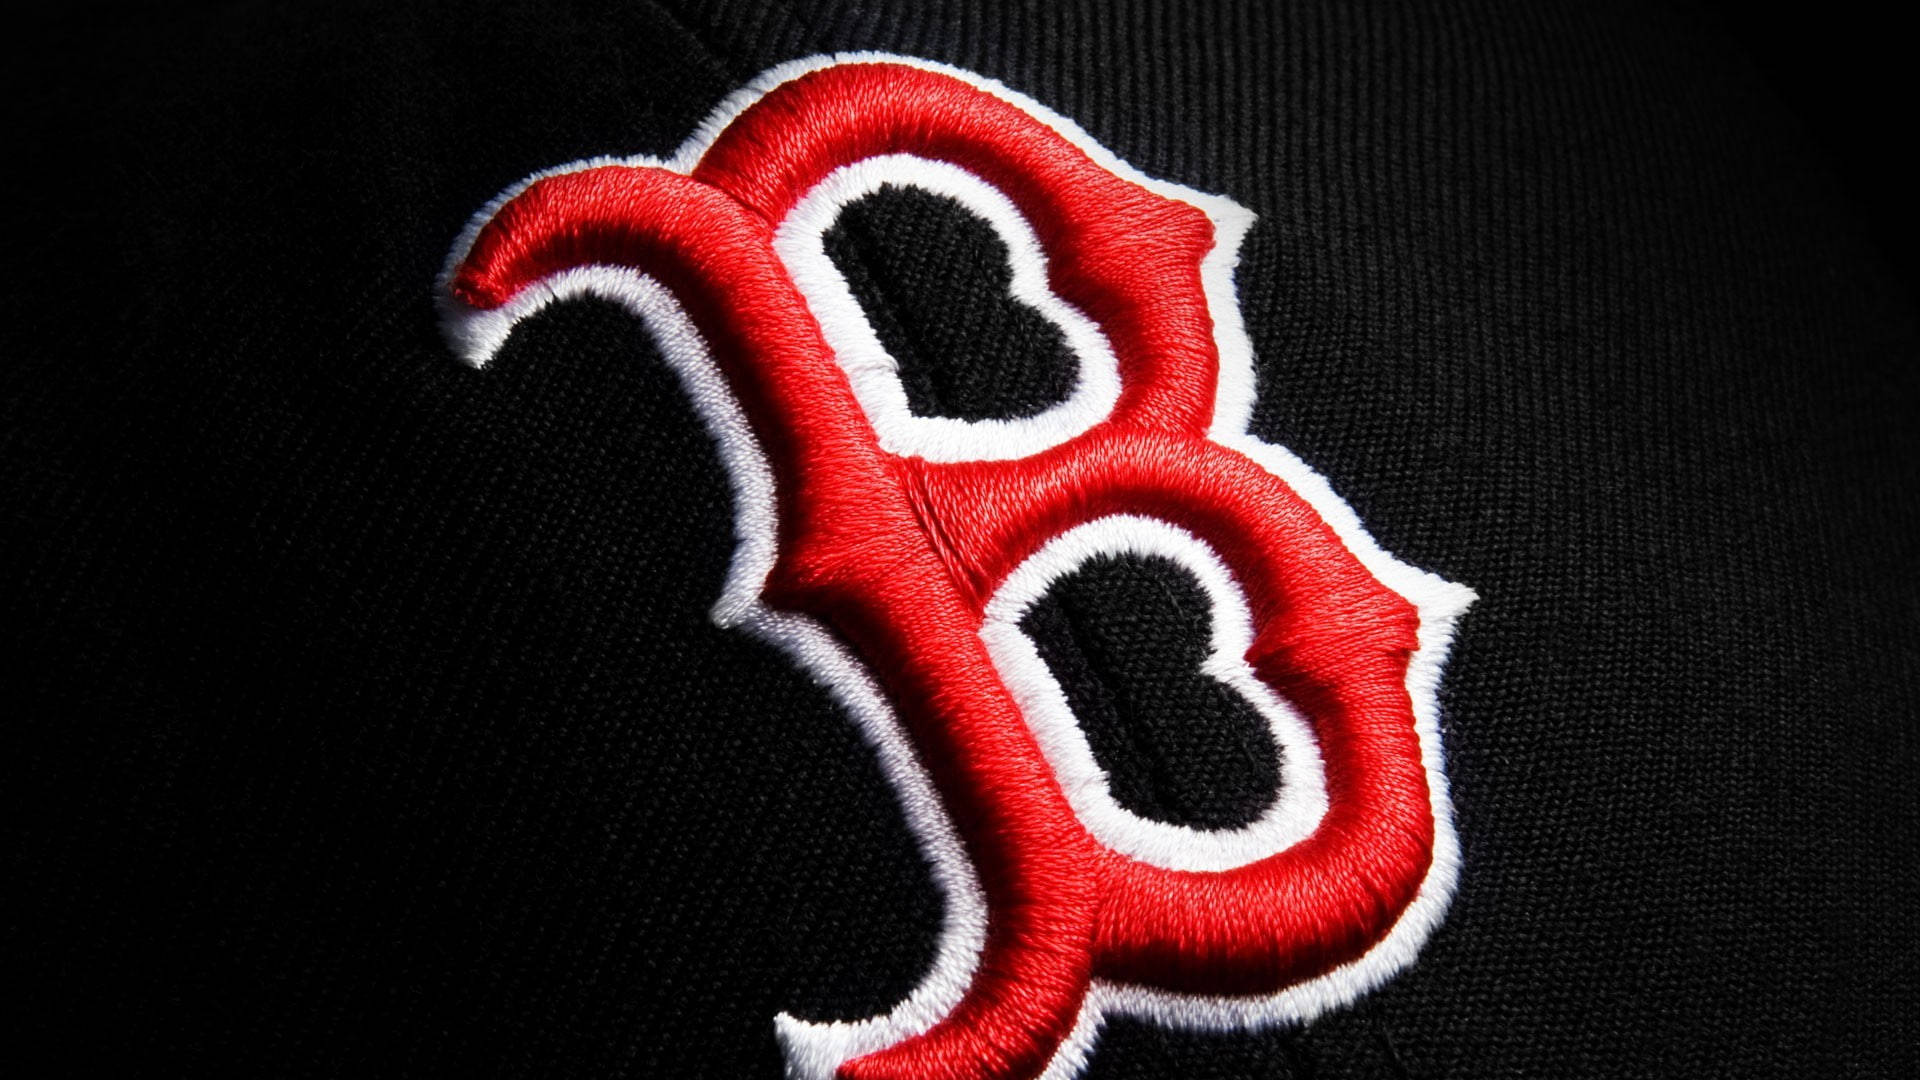 Bostonred Sox B-broderi Wallpaper